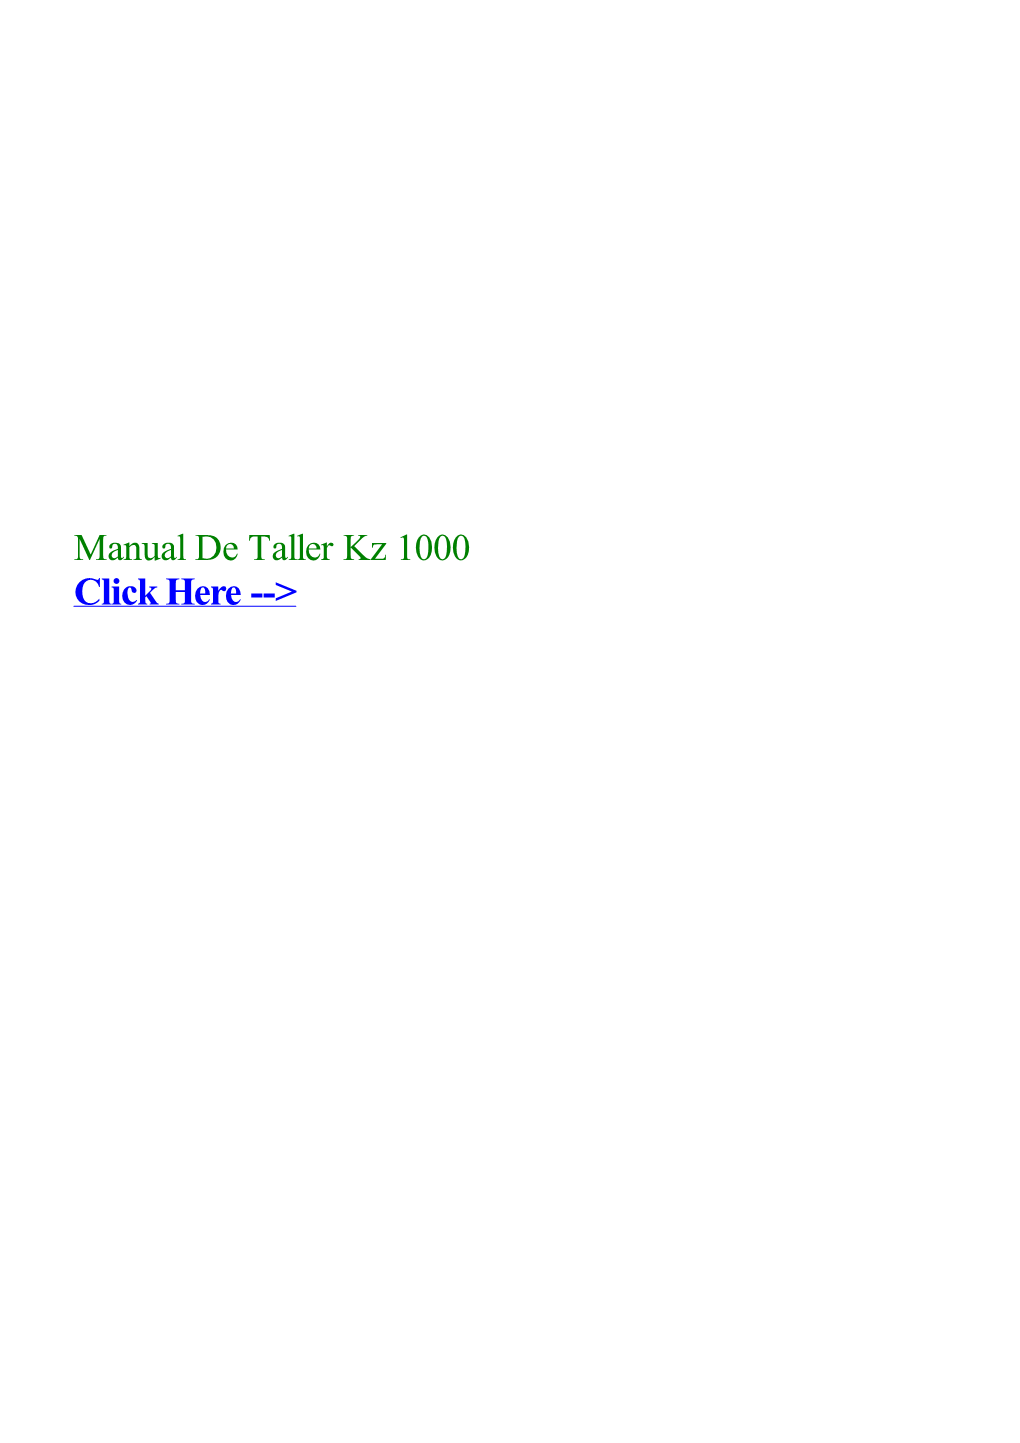 Manual De Taller Kz 1000